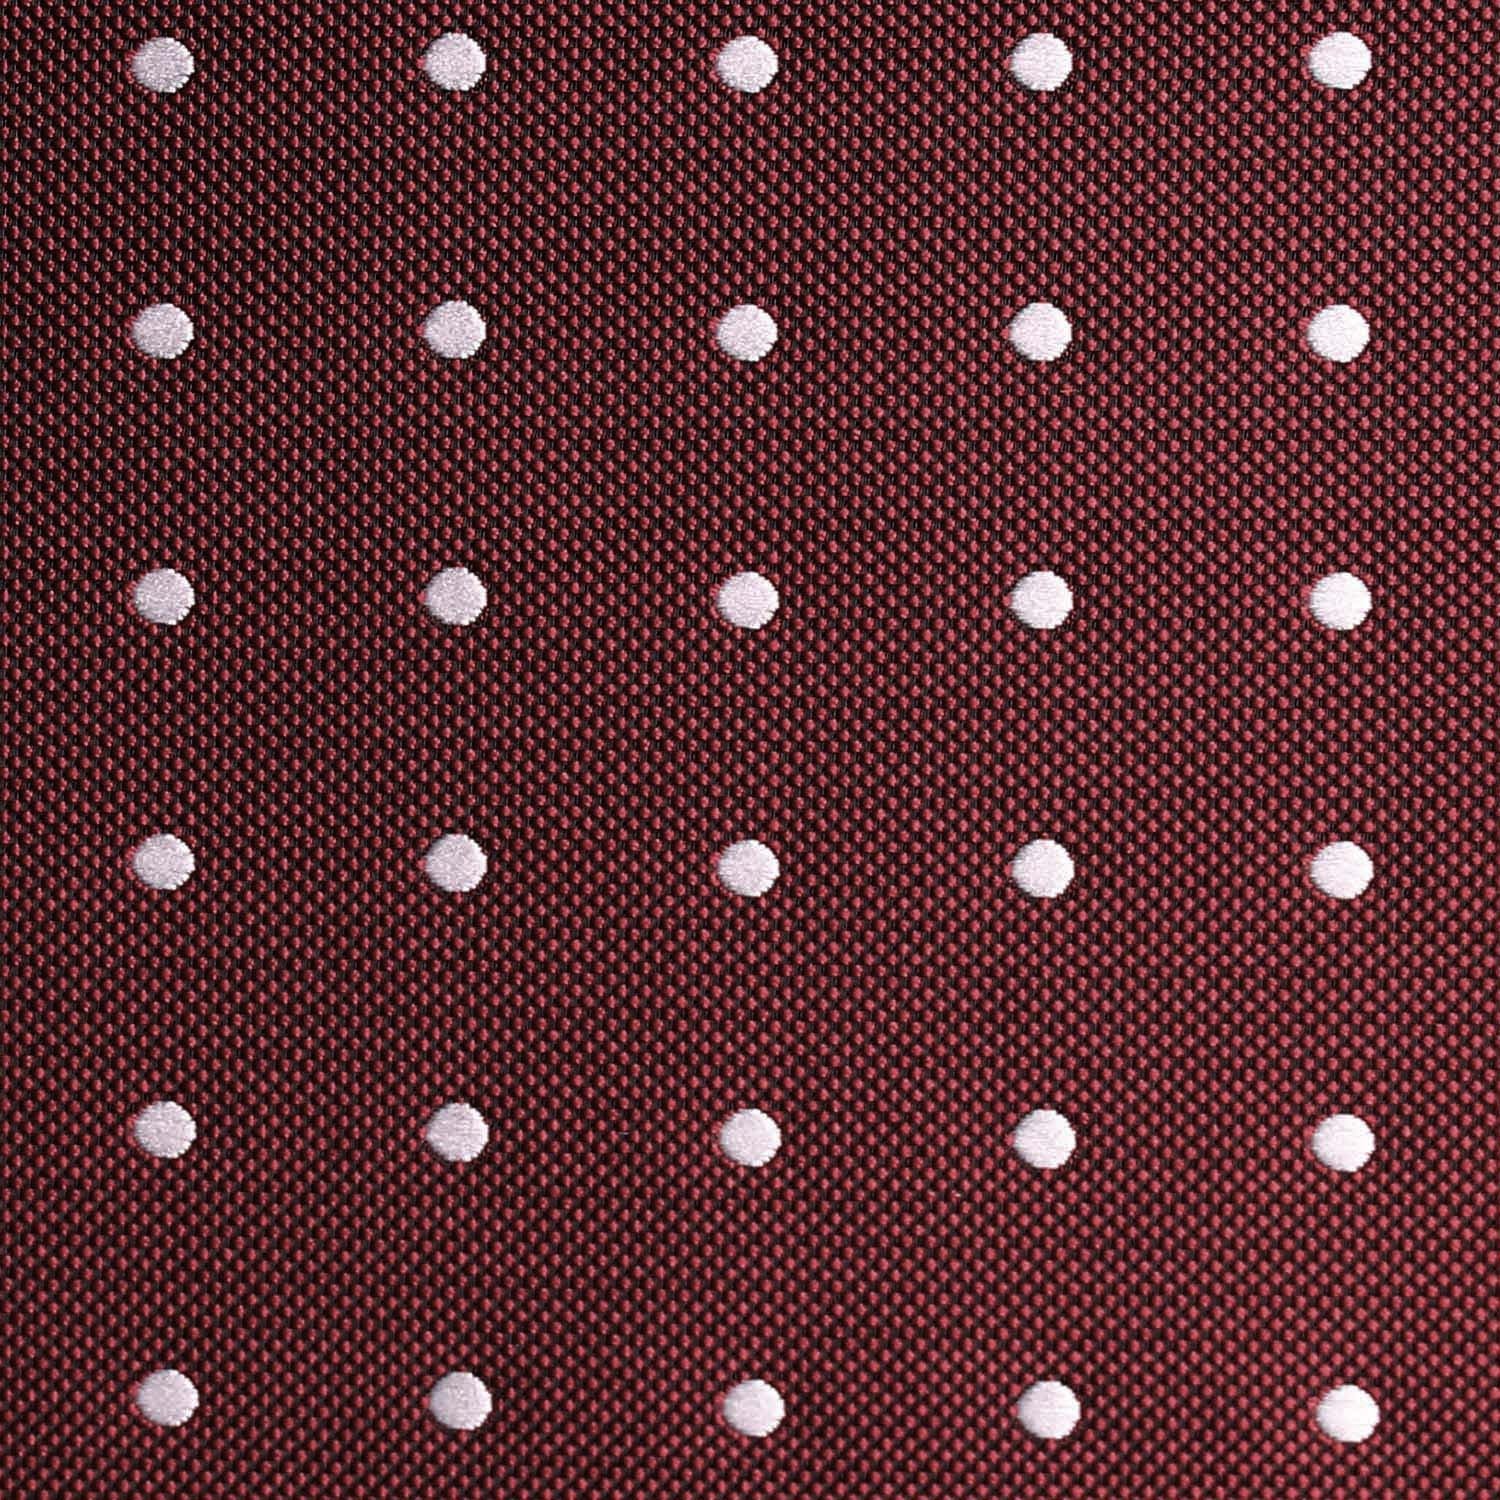 Mahogany Maroon with White Polka Dots Fabric Bow Tie M123